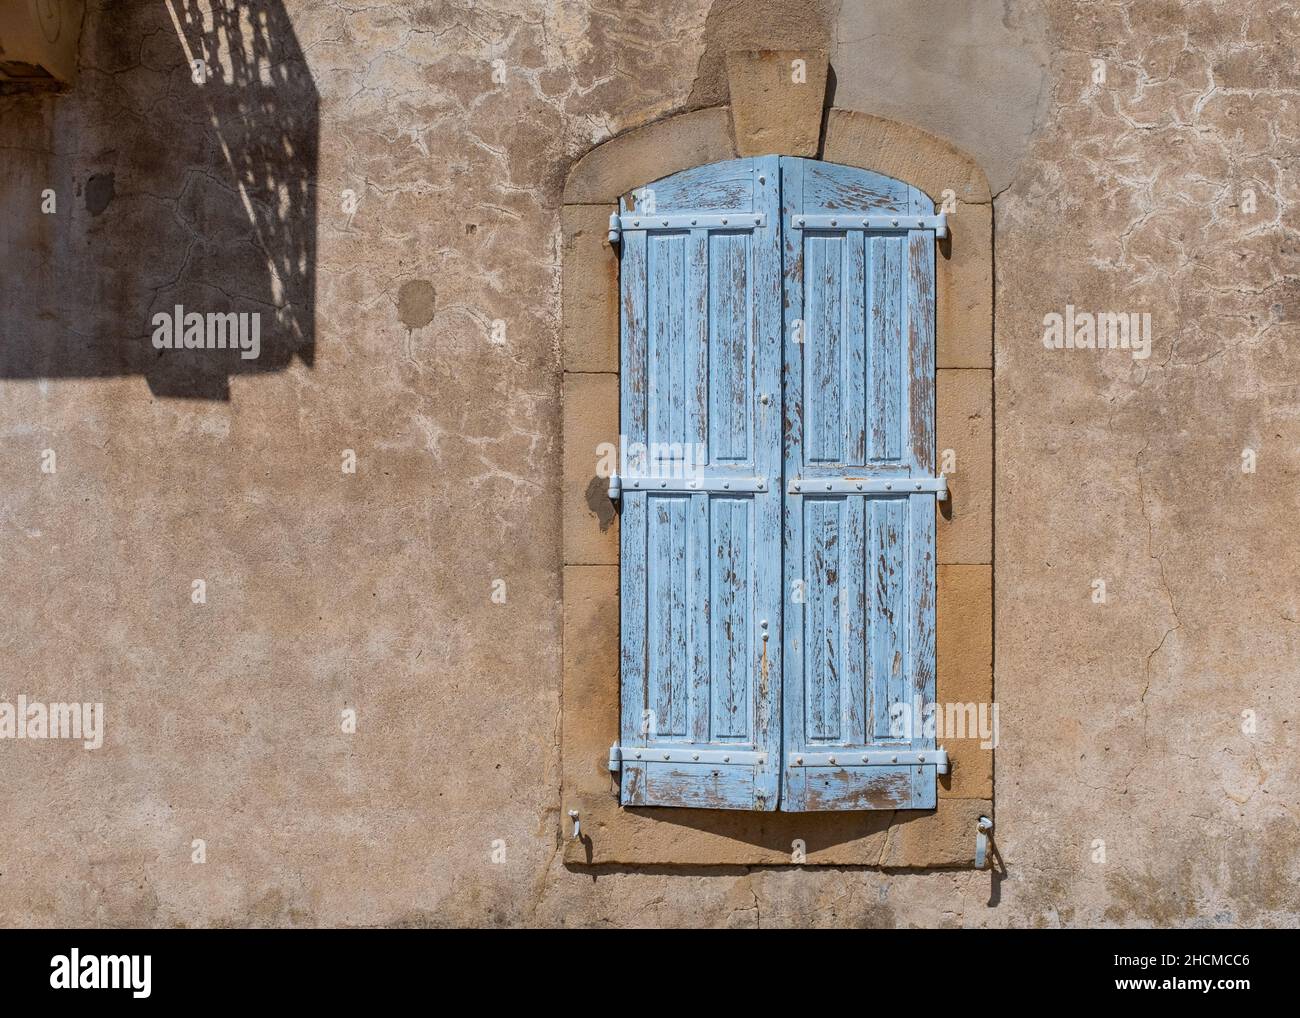 Une fenêtre bleu pâle sur une maison historique dans la ville de Joyeuse, dans le sud de la France, Ardeche, pris un matin d'été ensoleillé sans personne Banque D'Images